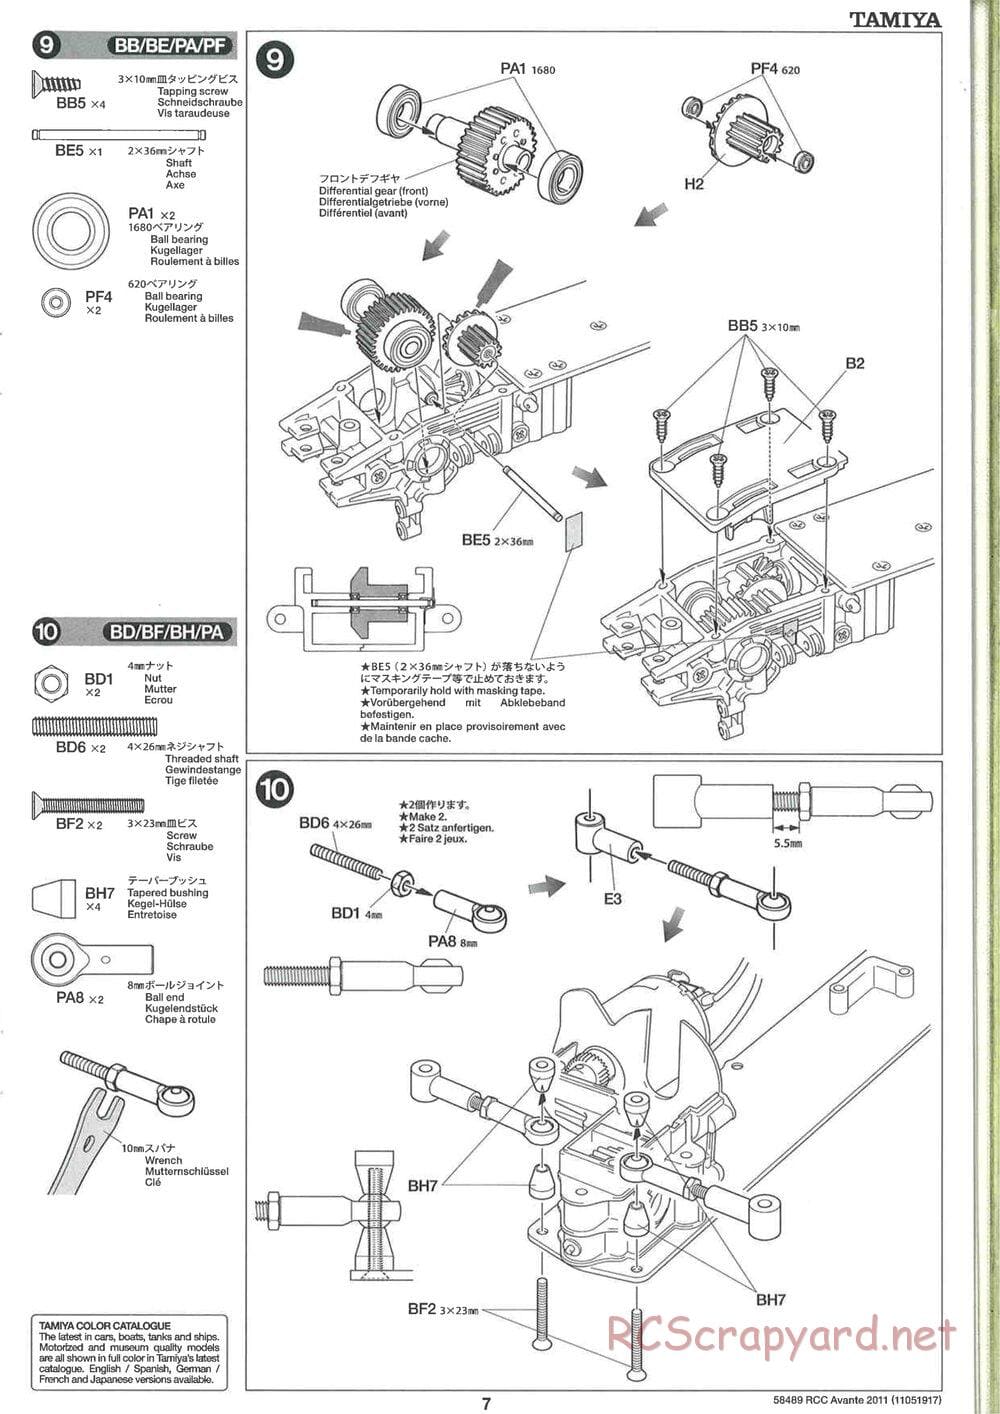 Tamiya - Avante 2011 - AV Chassis - Manual - Page 7